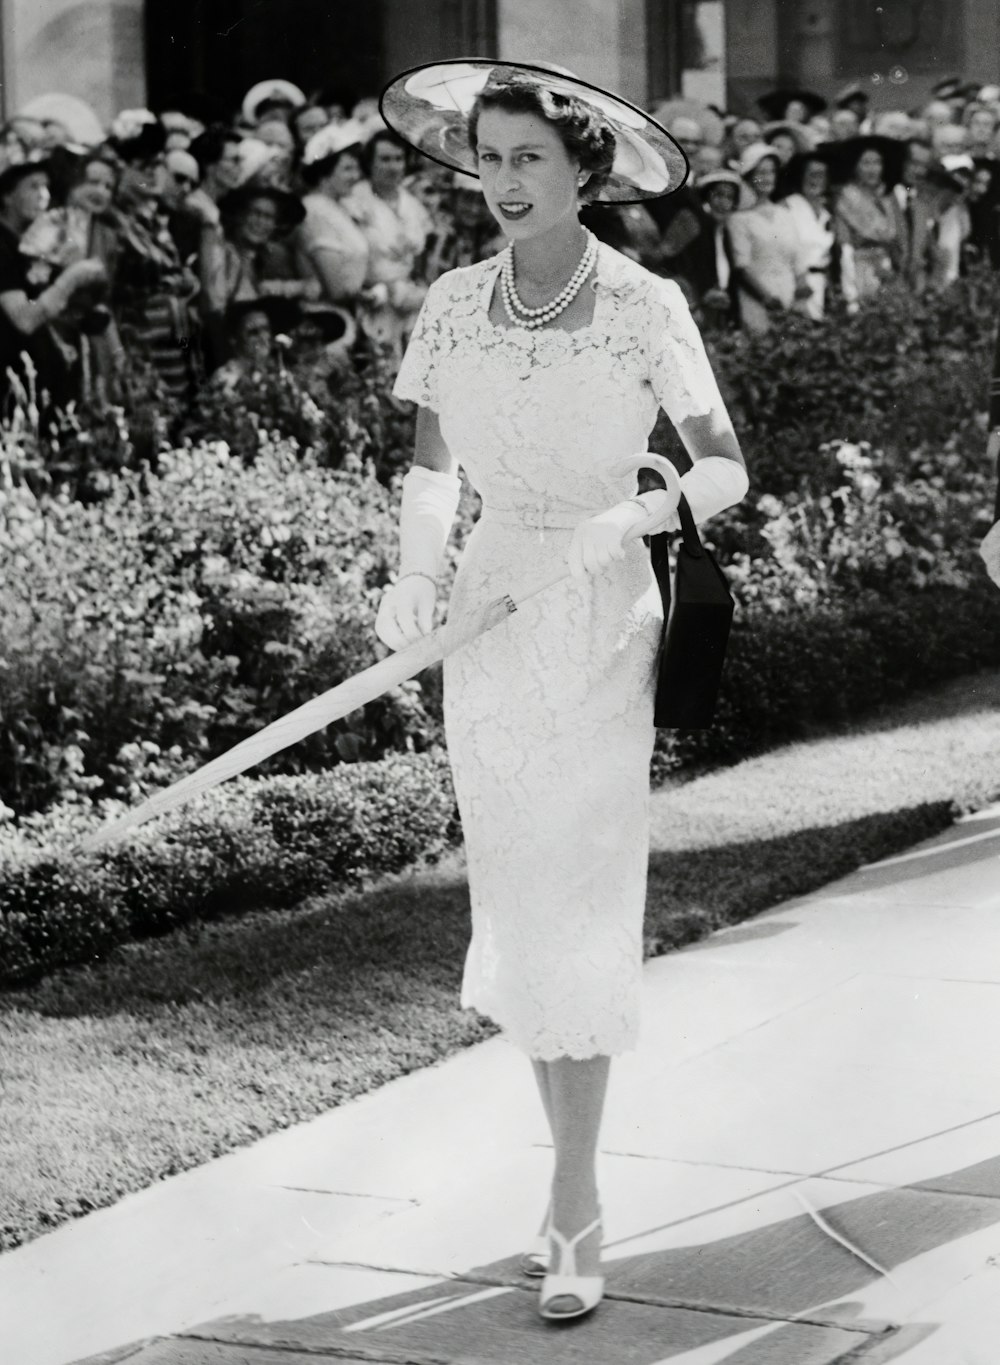 흰 드레스와 모자를 쓴 여자가 보도를 걷고 있다